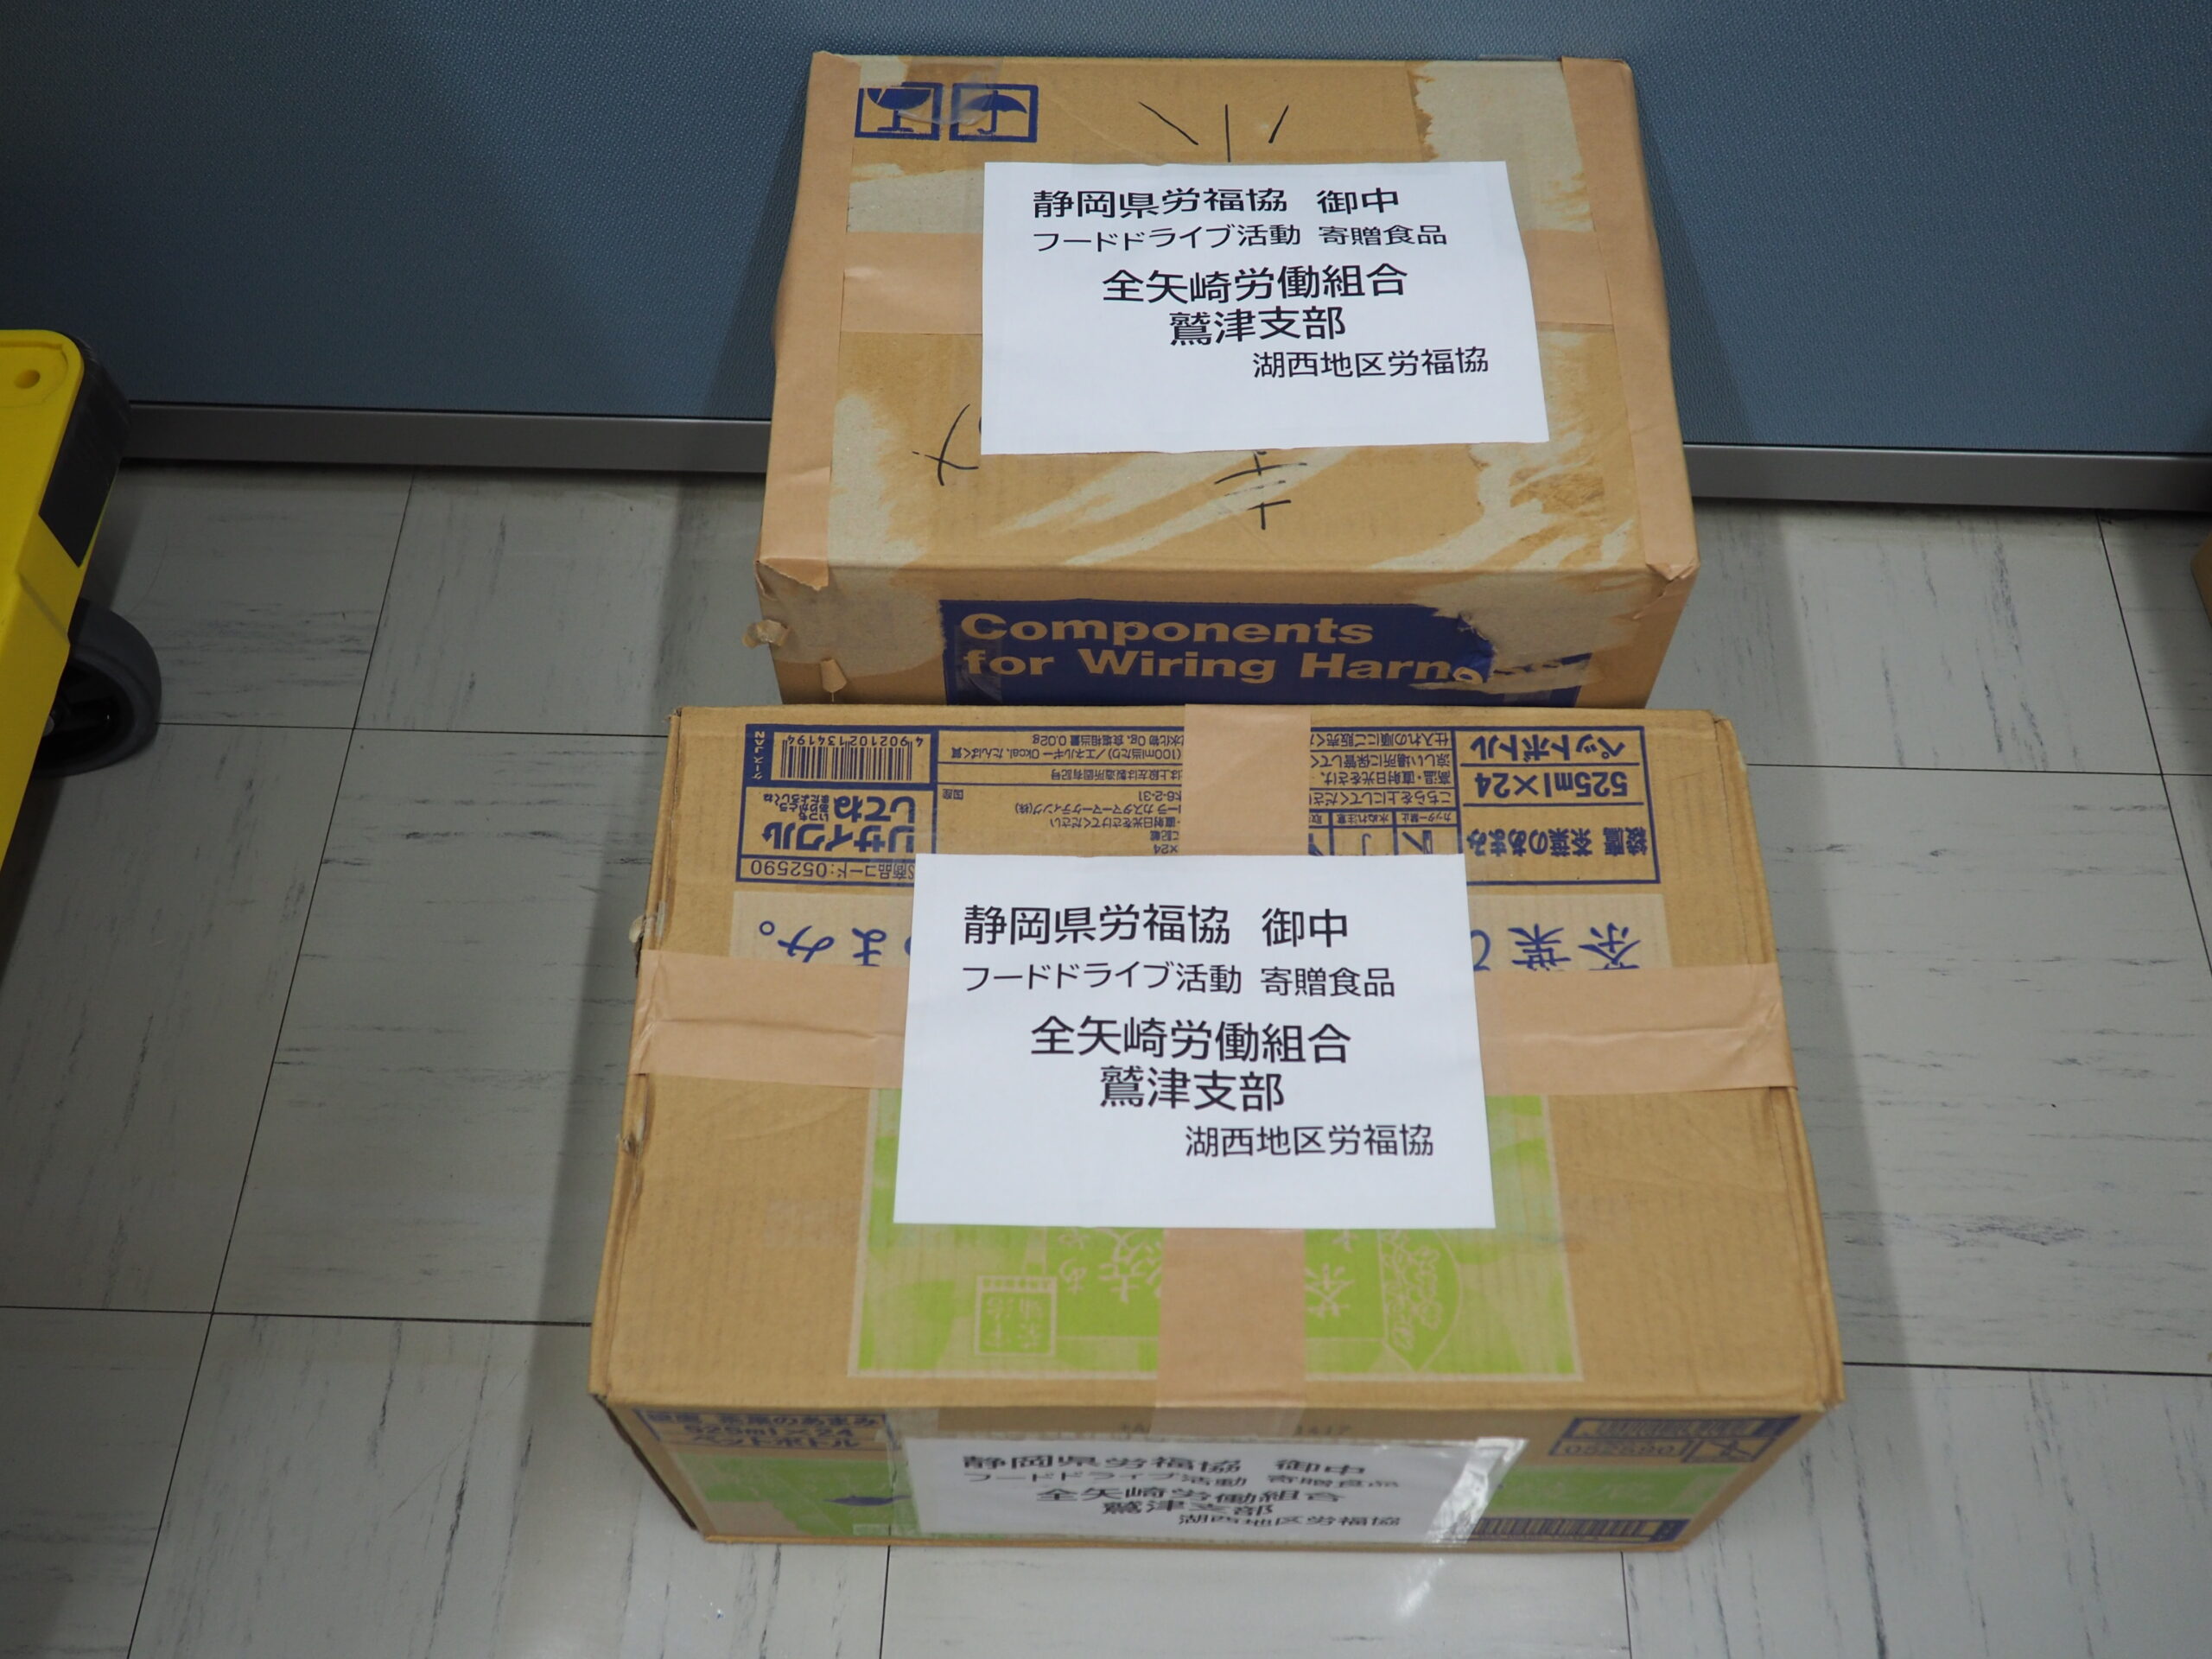 全矢崎労働組合鷲津支部様・スズキ労働組合相良支部様から食品を提供いただきました。